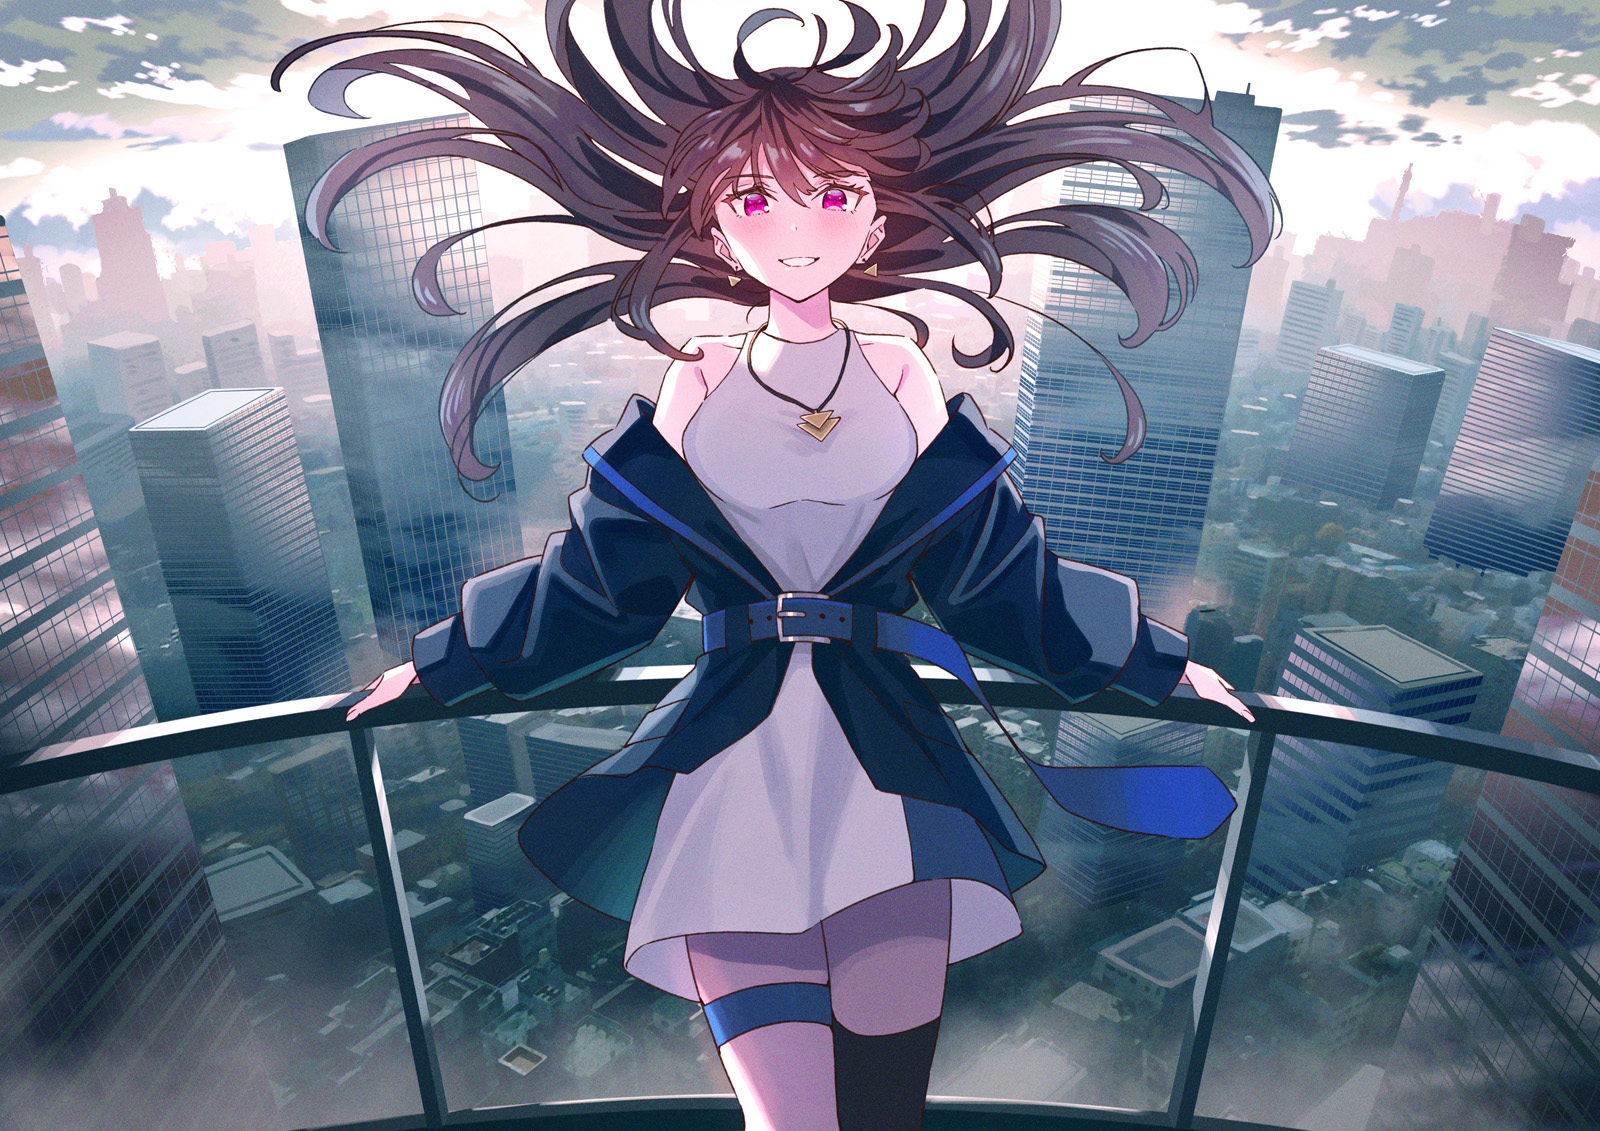 Anime Anime Girls Digital Art Artwork Koh Rd Cityscape Dress Brunette Violet Eyes Smiling 1600x1131